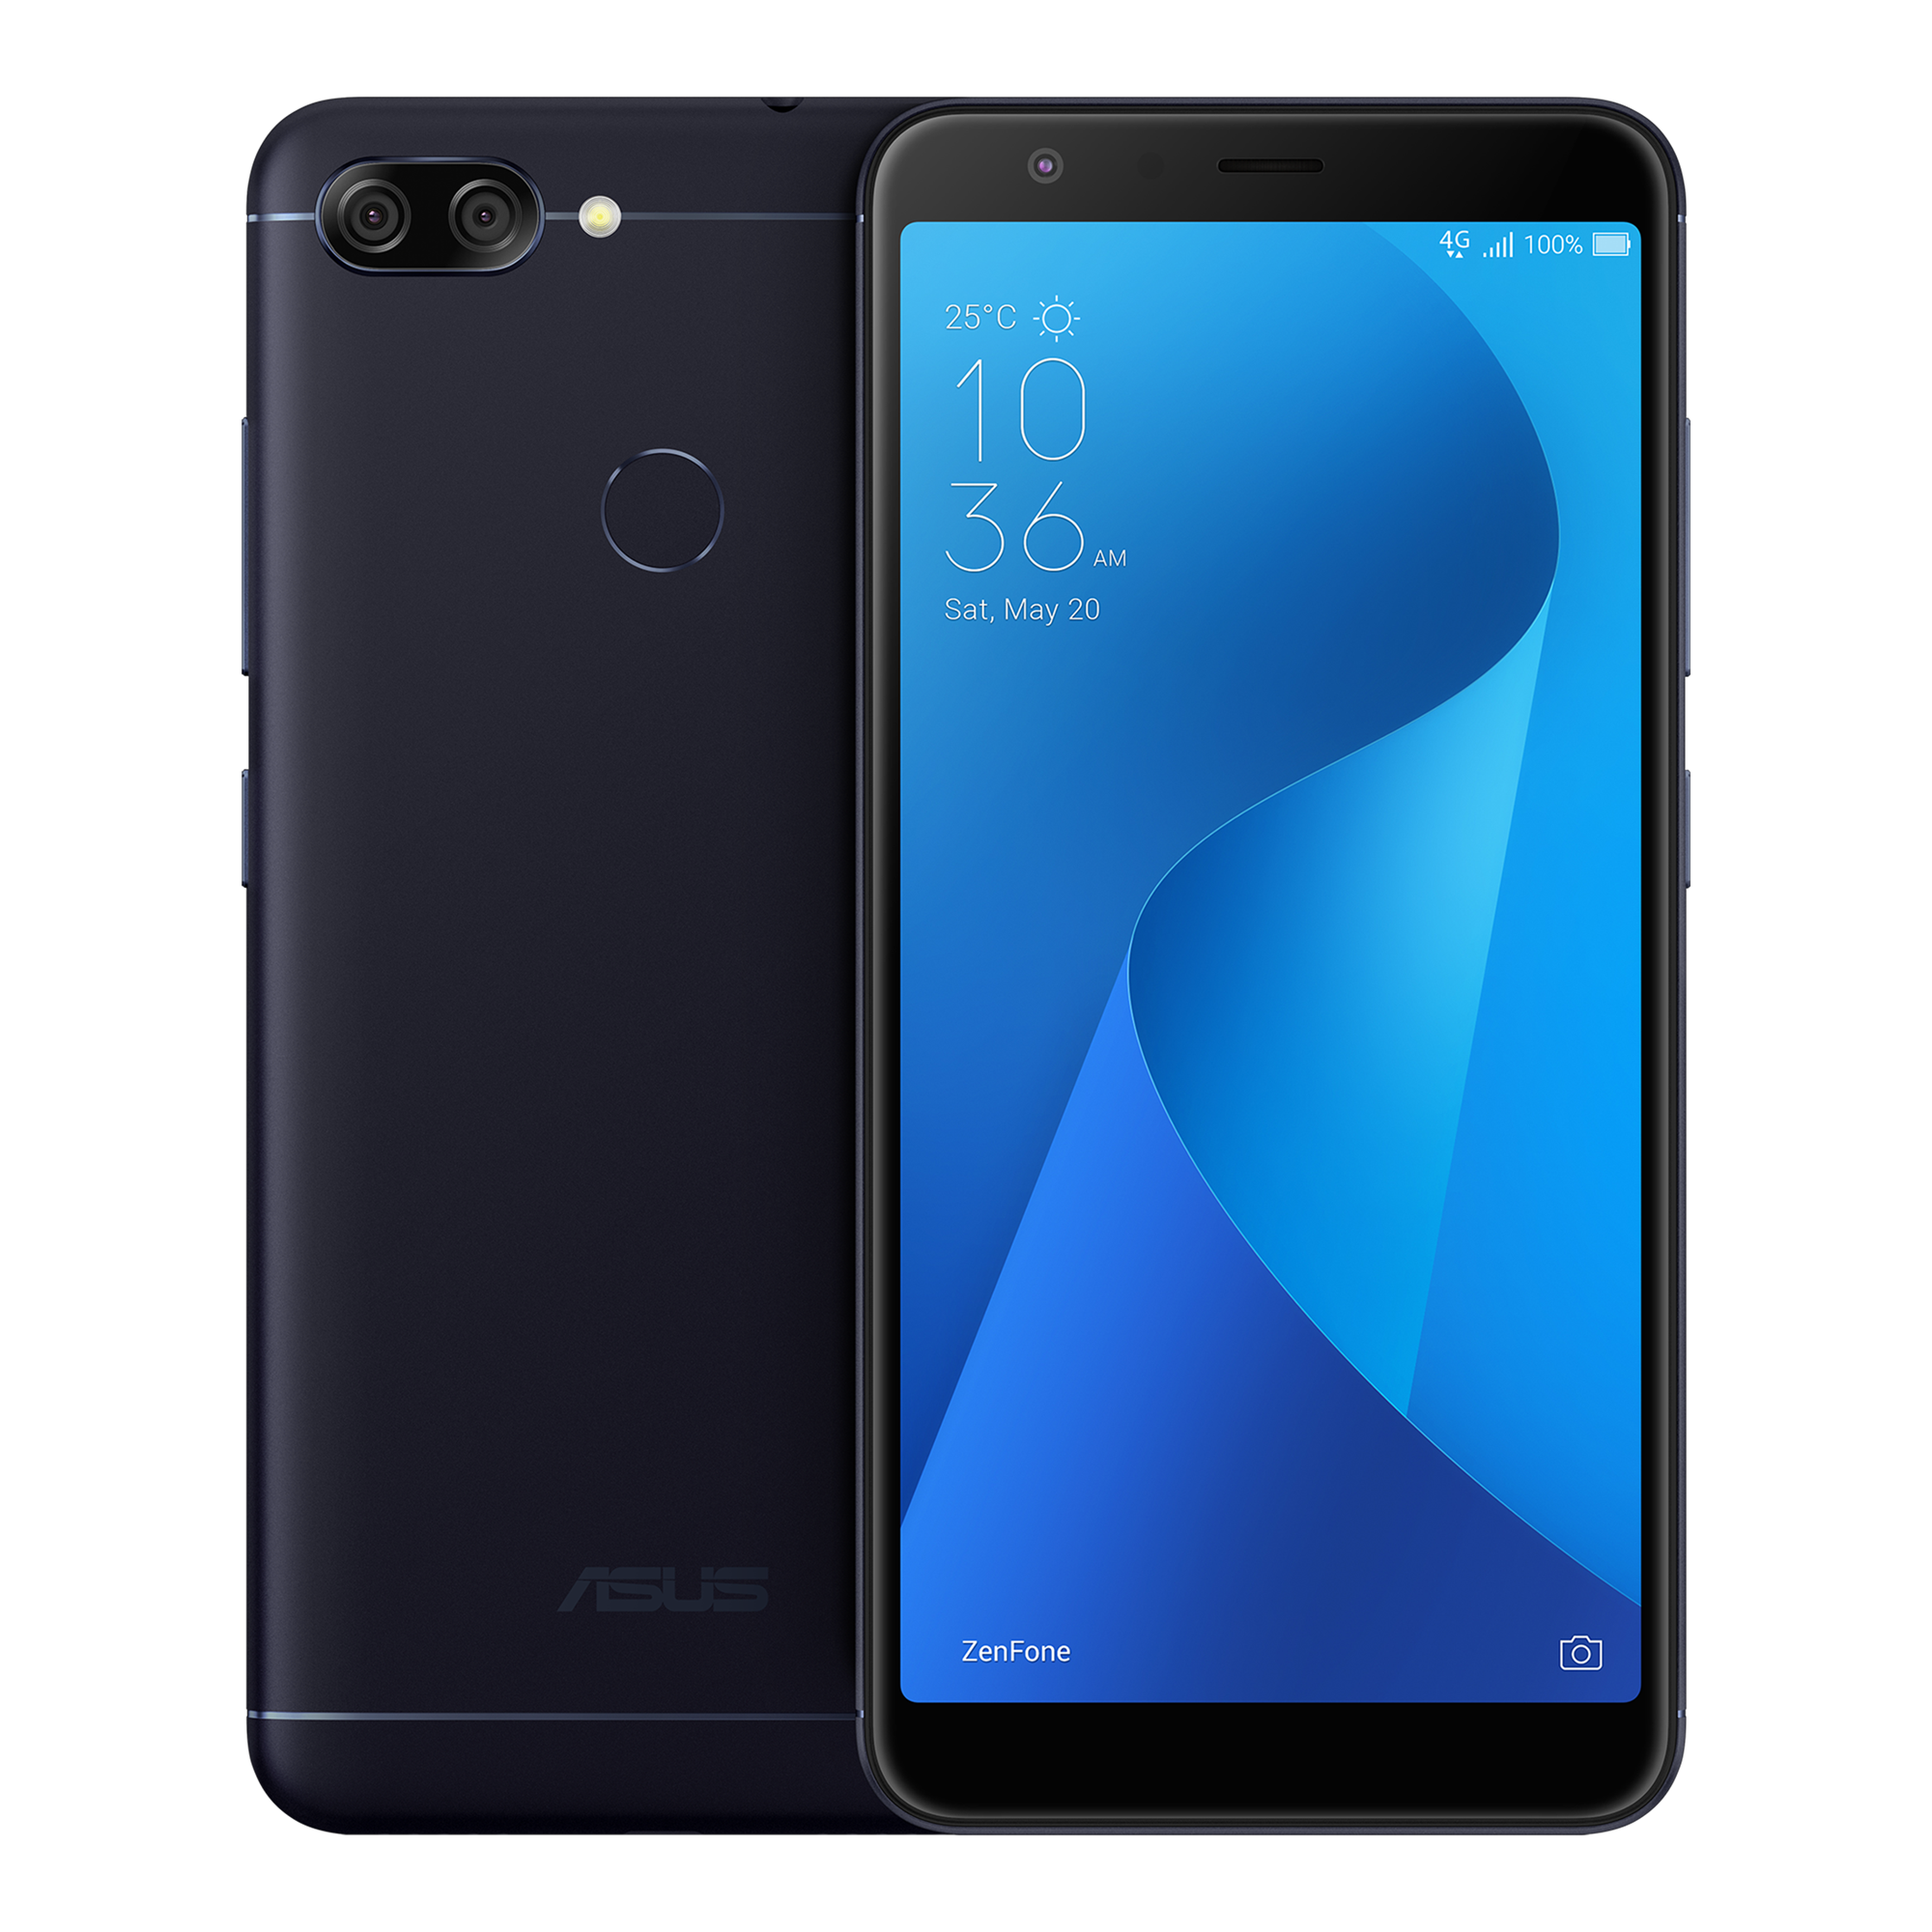 Asus Zenphone Max plus simフリースマートフォン/携帯電話